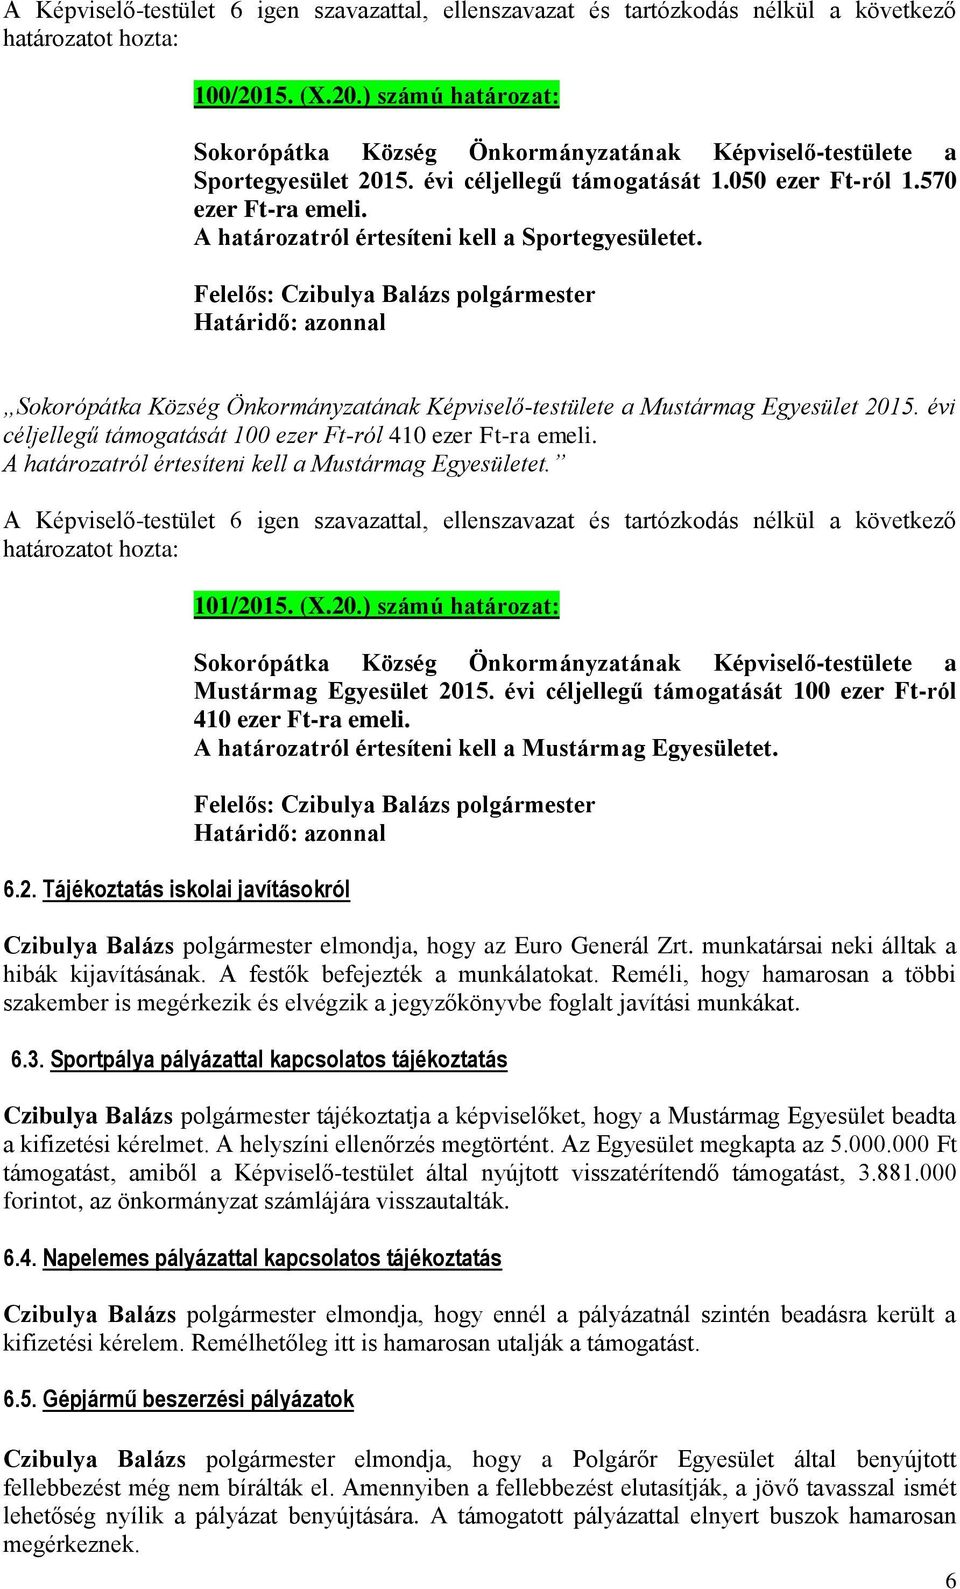 A határozatról értesíteni kell a Mustármag Egyesületet. 6.2. Tájékoztatás iskolai javításokról 101/201